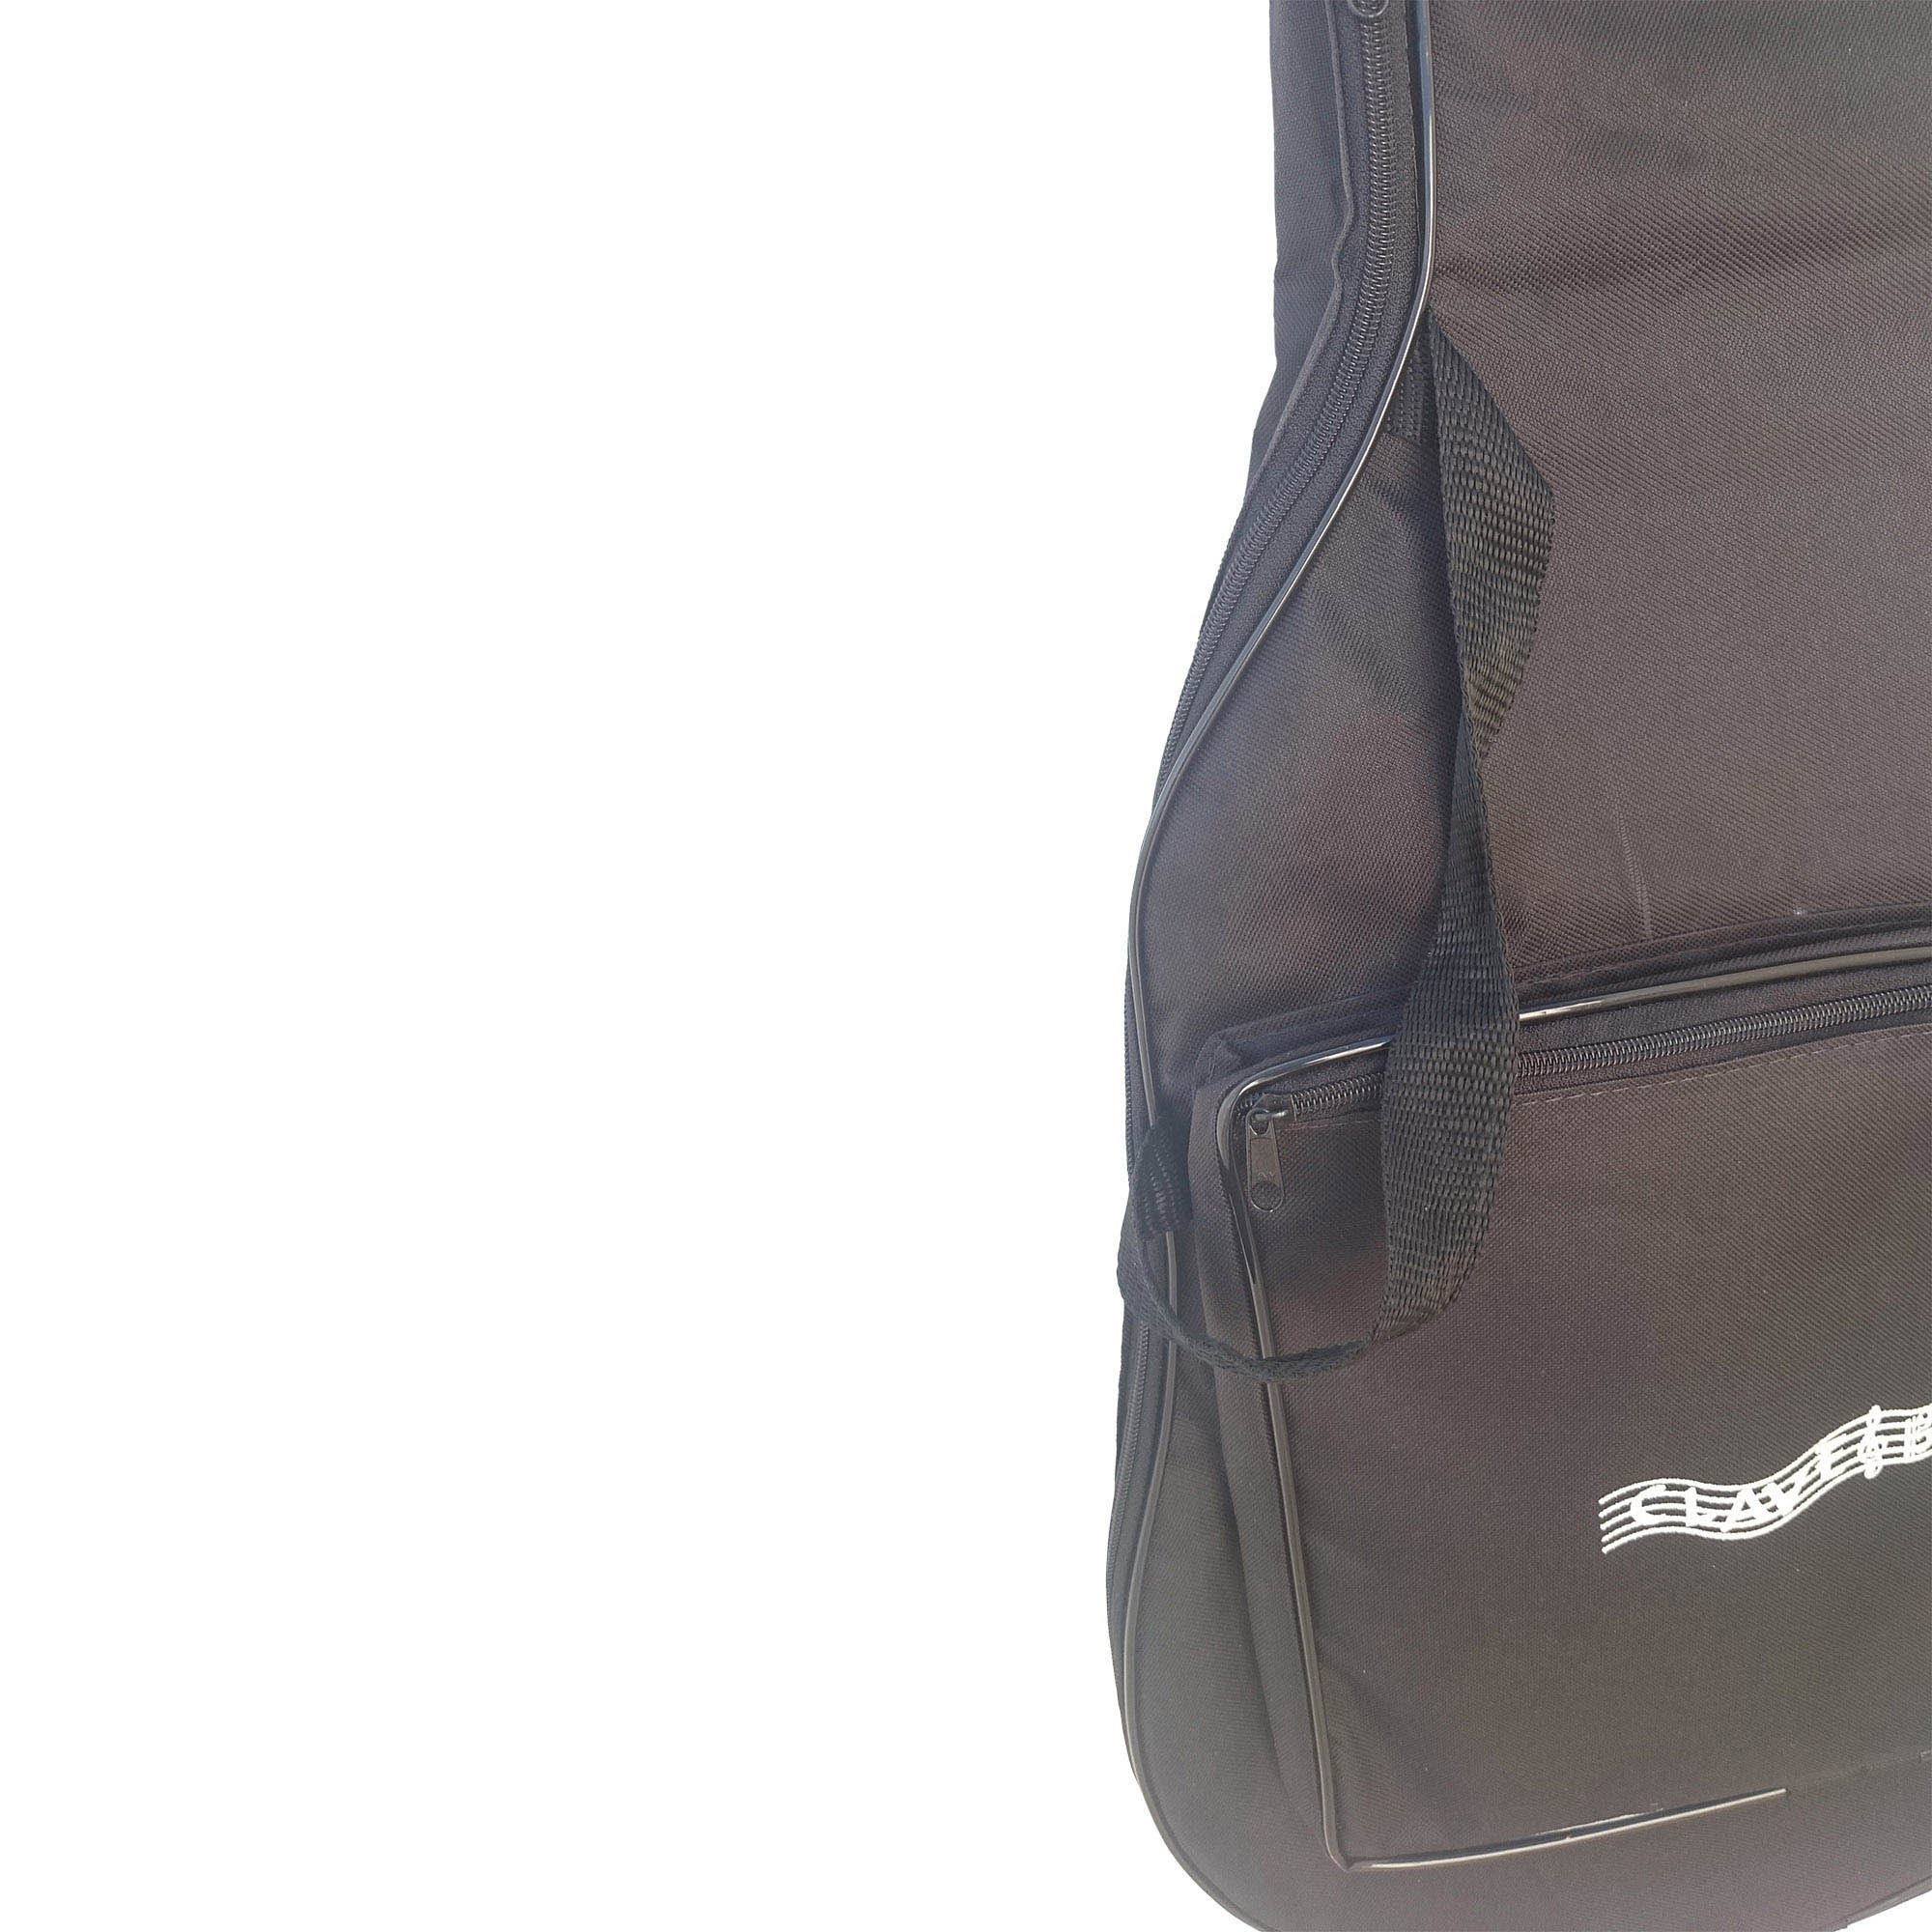 Capa Bag Para Violão Folk Luxo CLAVE & BAG. Acolchoada, alça de mão e de mochila. LU 503